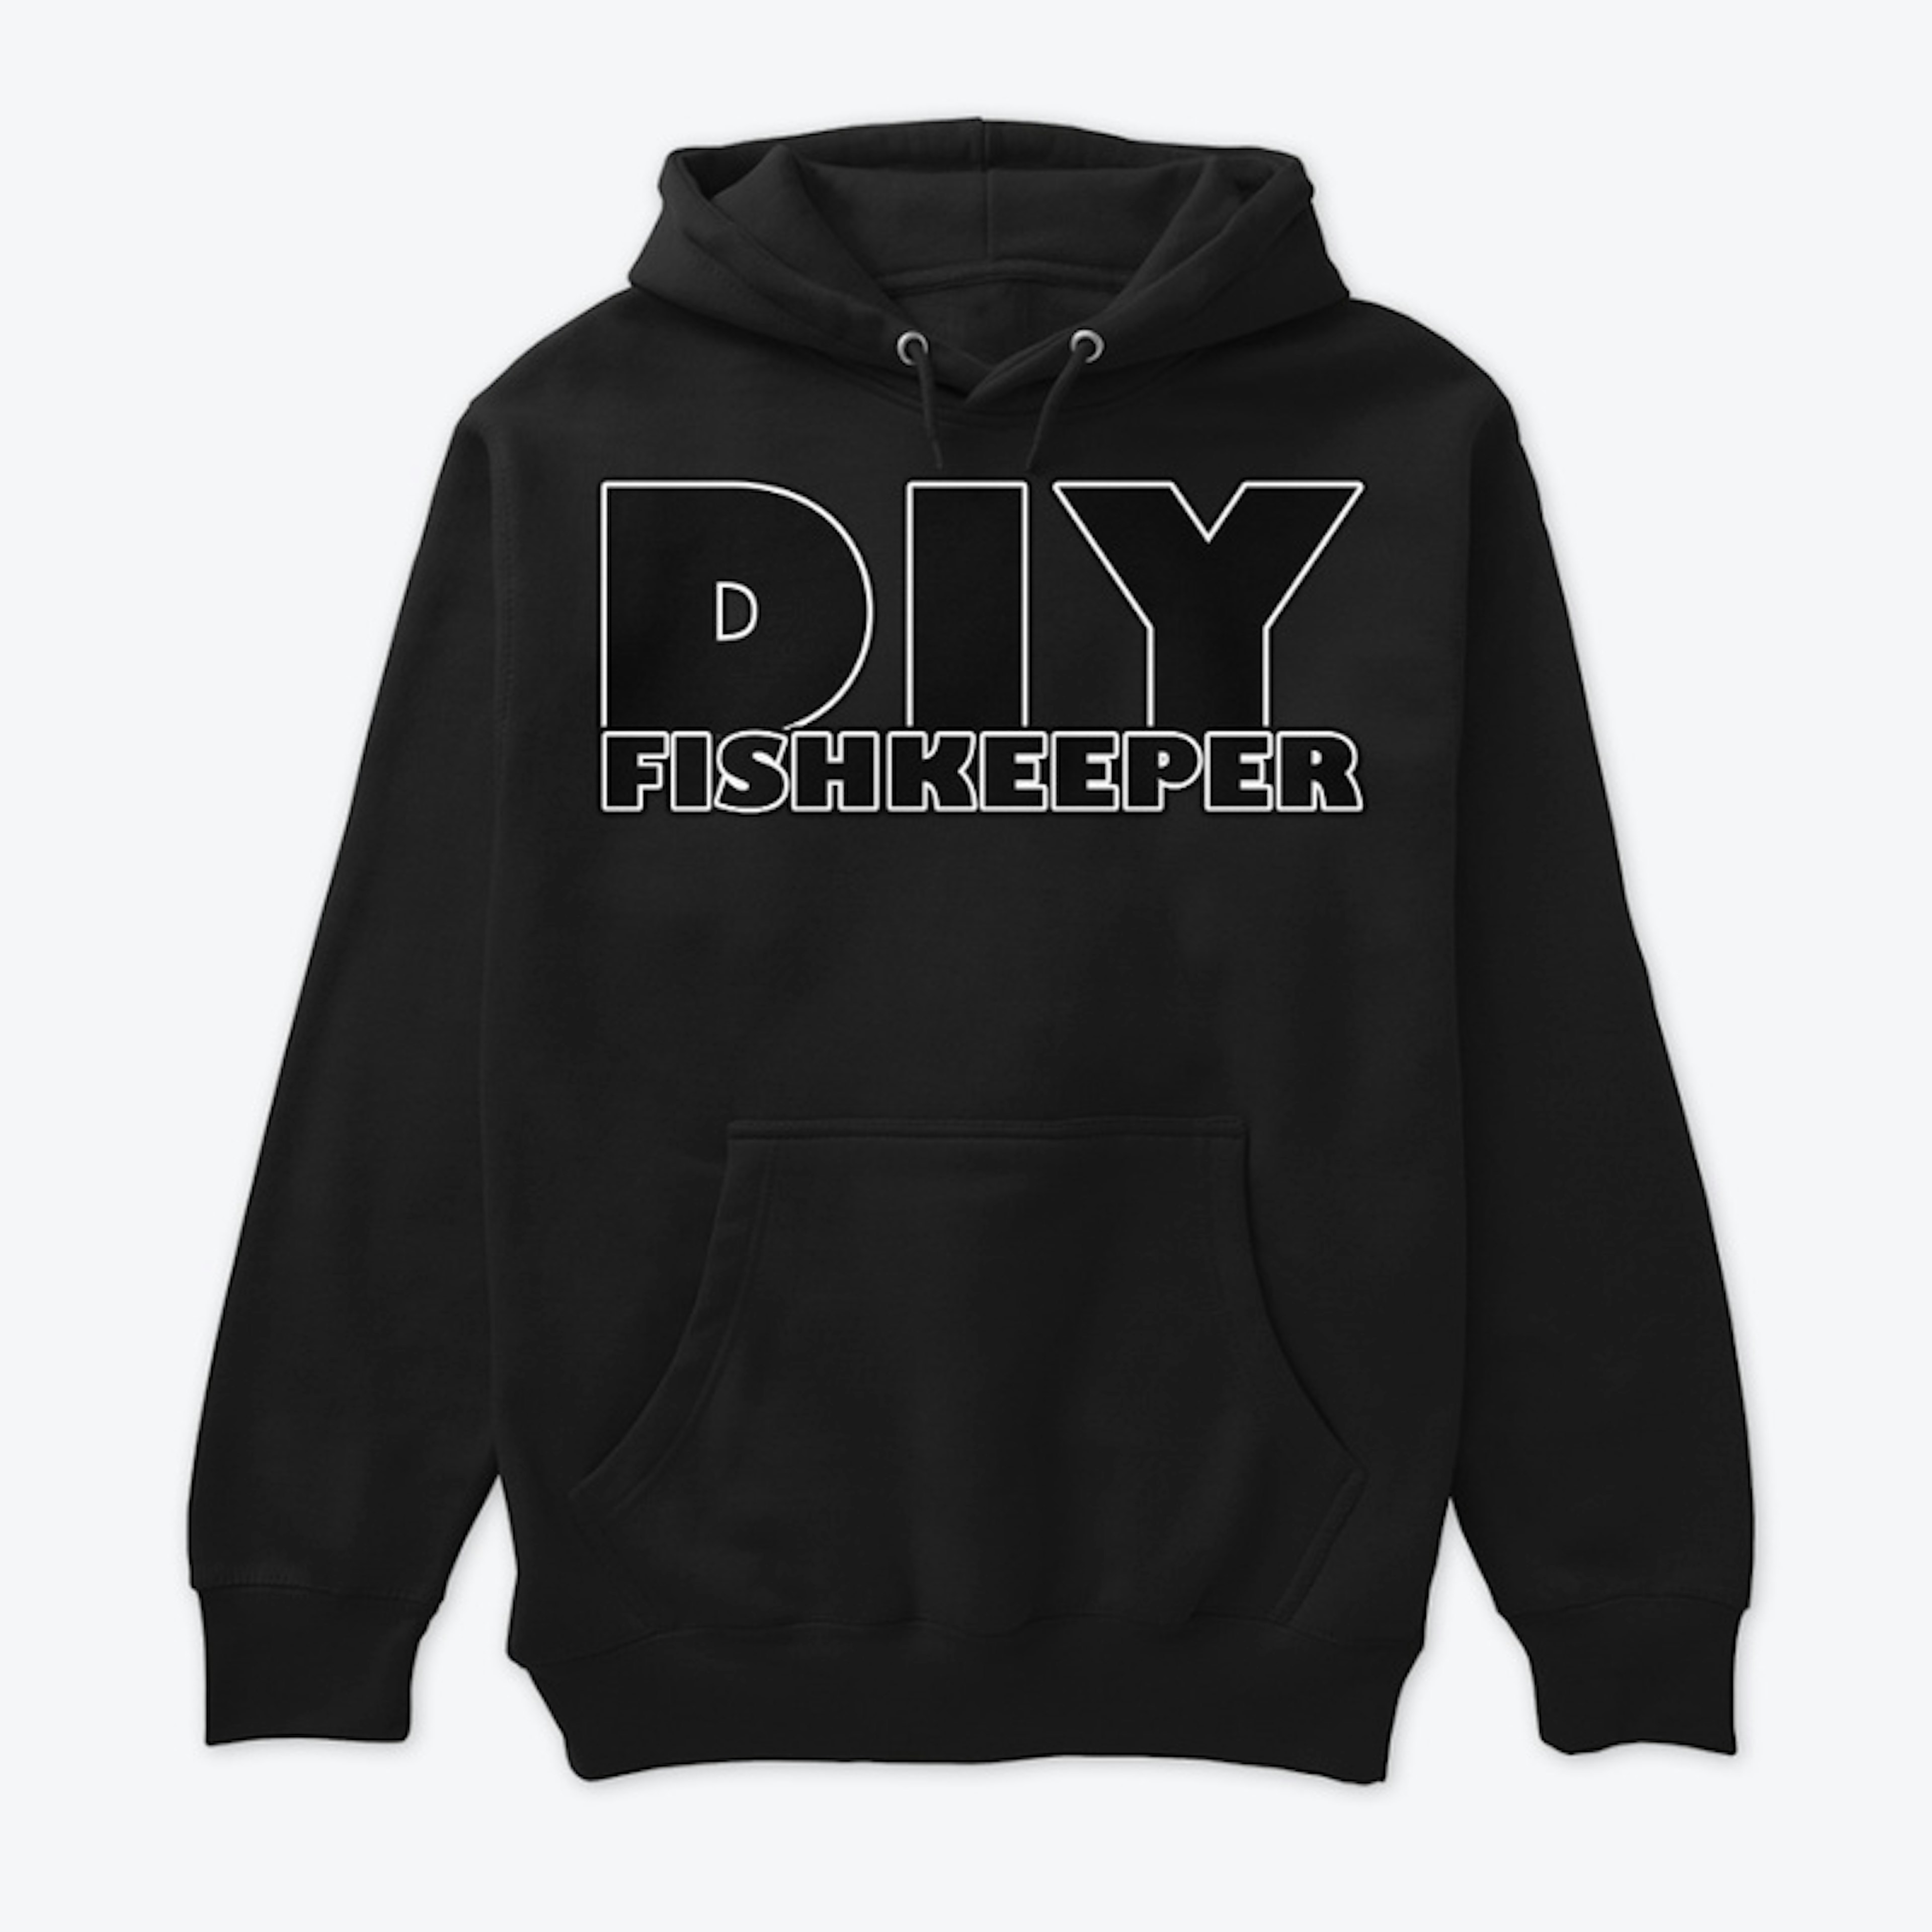 DIY fishkeeper hoodie